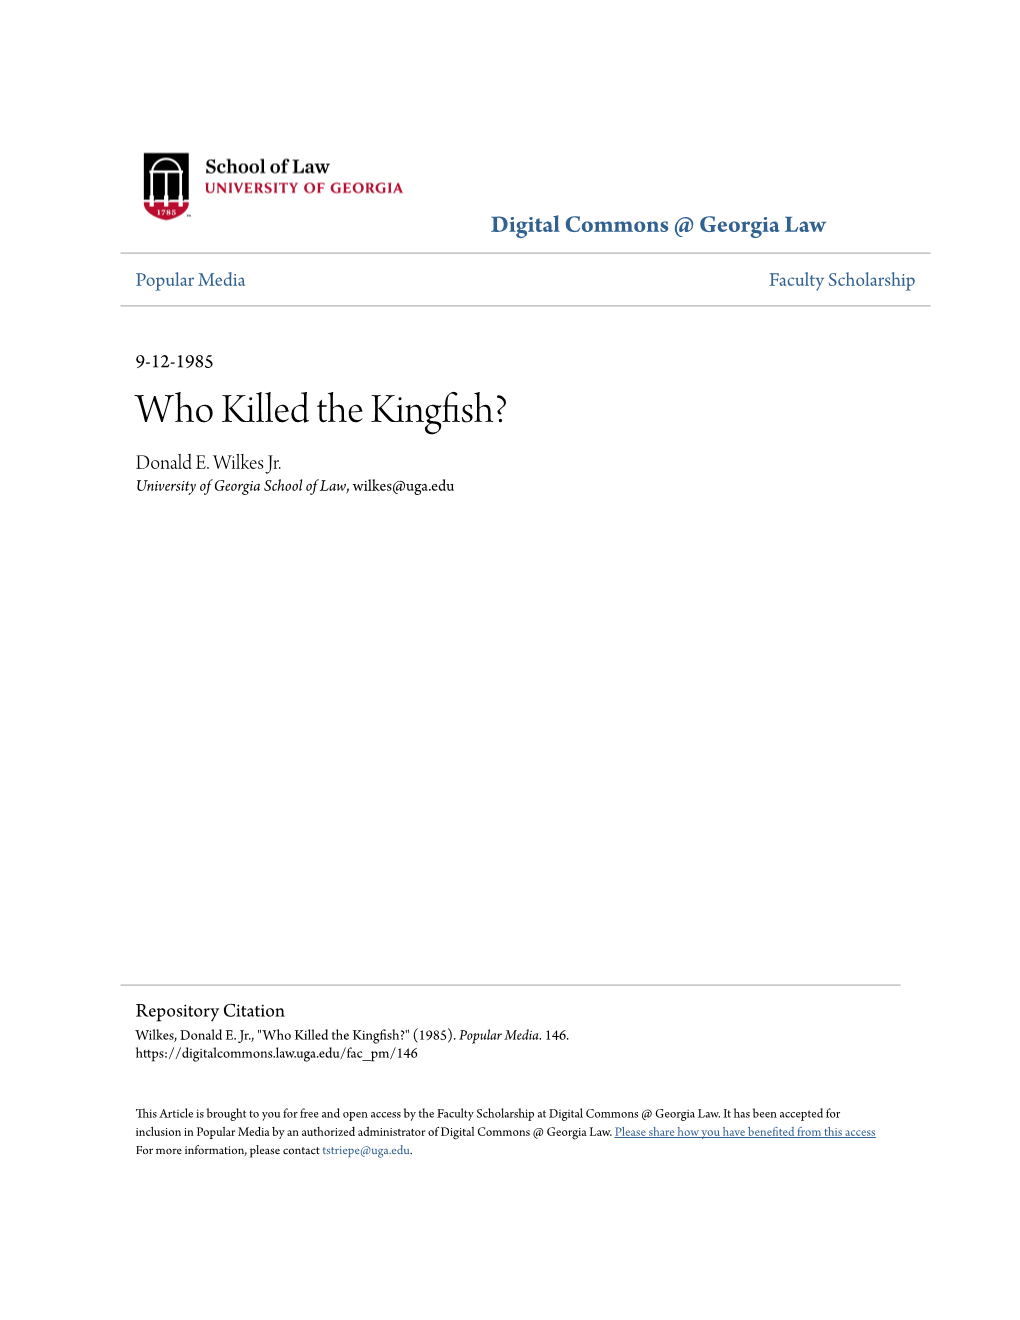 Who Killed the Kingfish? Donald E